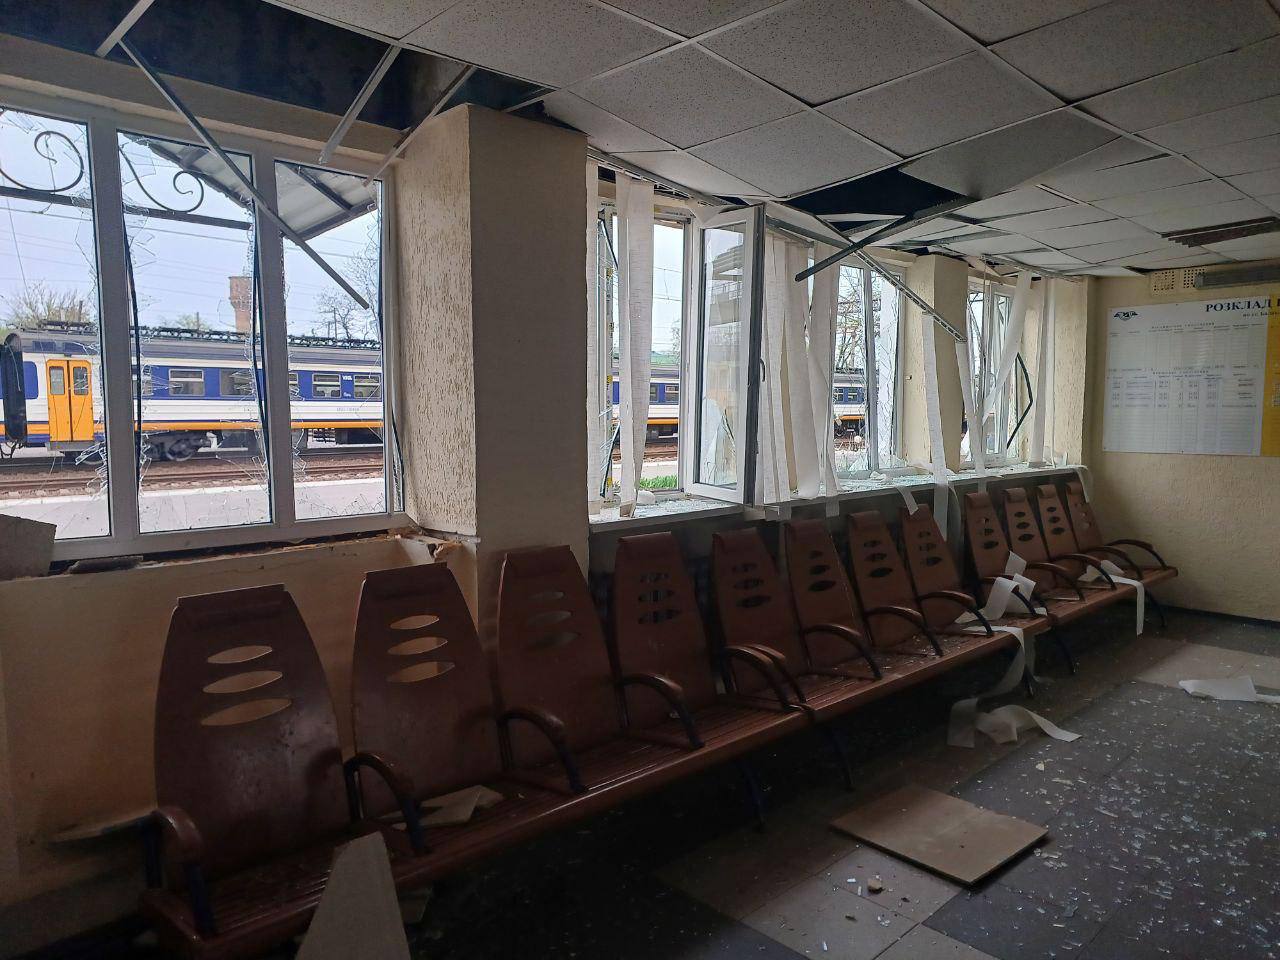 Фото выбитых окон в зале ожидения. Источник - Телеграм